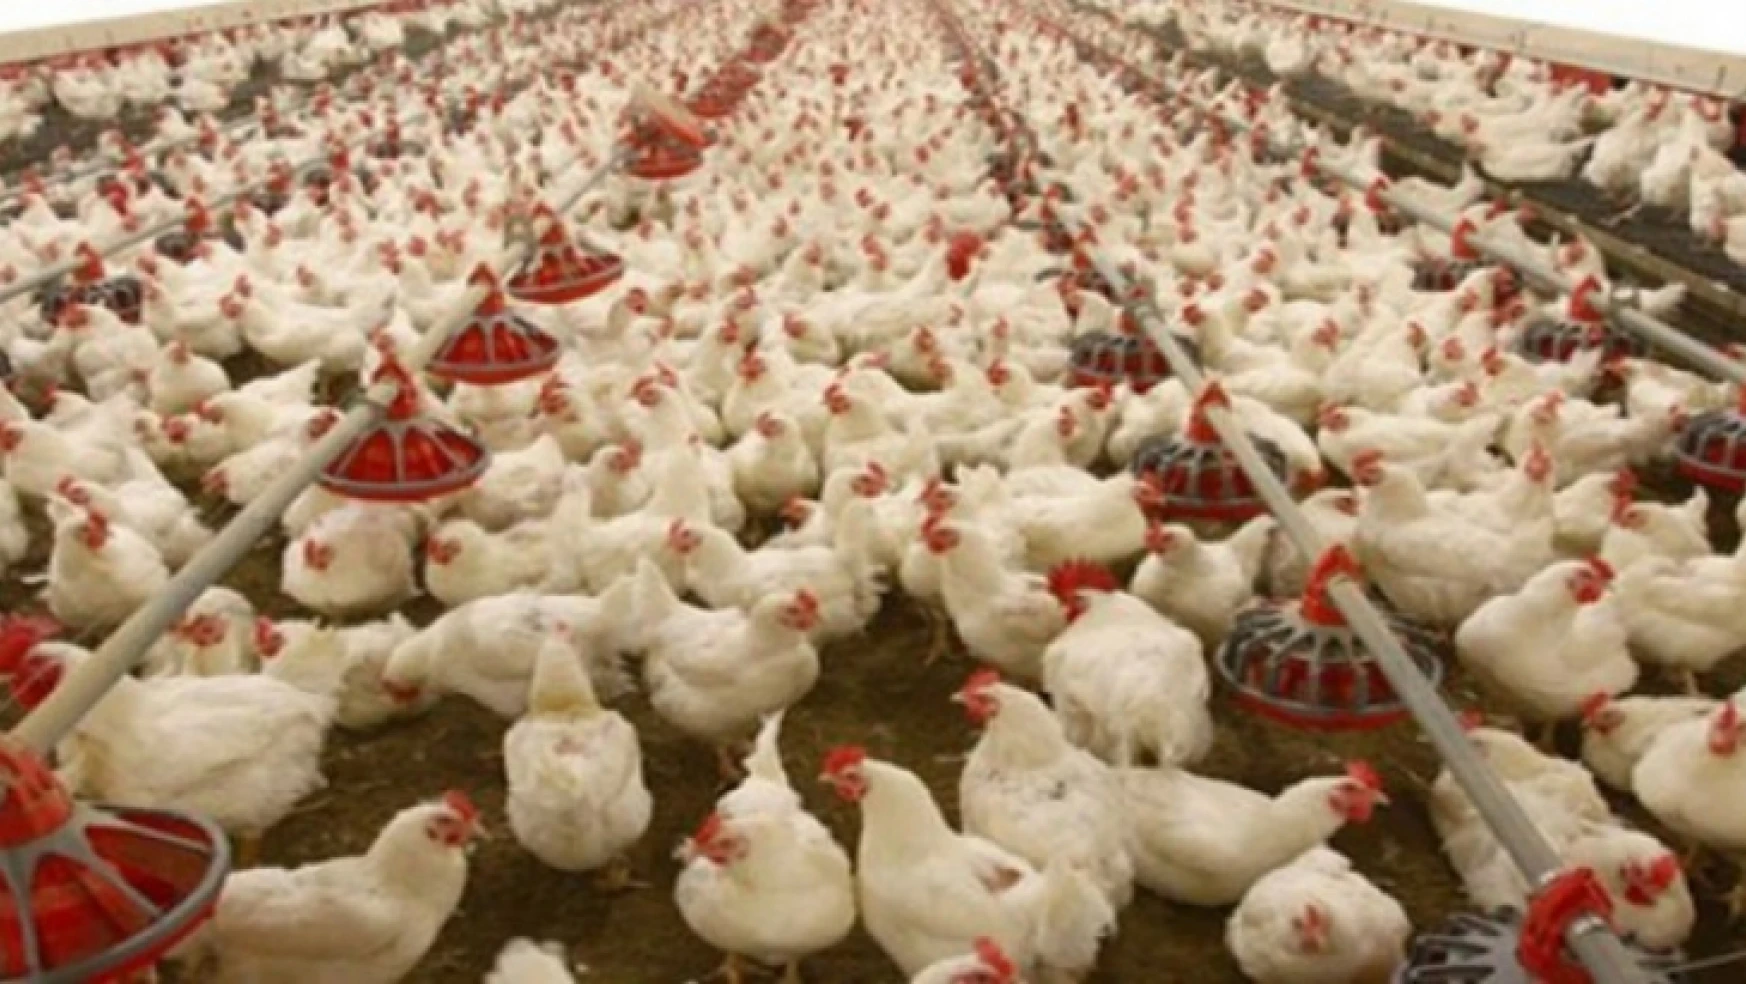 Tavuk eti üretimi 188 bin 613 ton, tavuk yumurtası üretimi 1,57 milyar adet olarak gerçekleşti